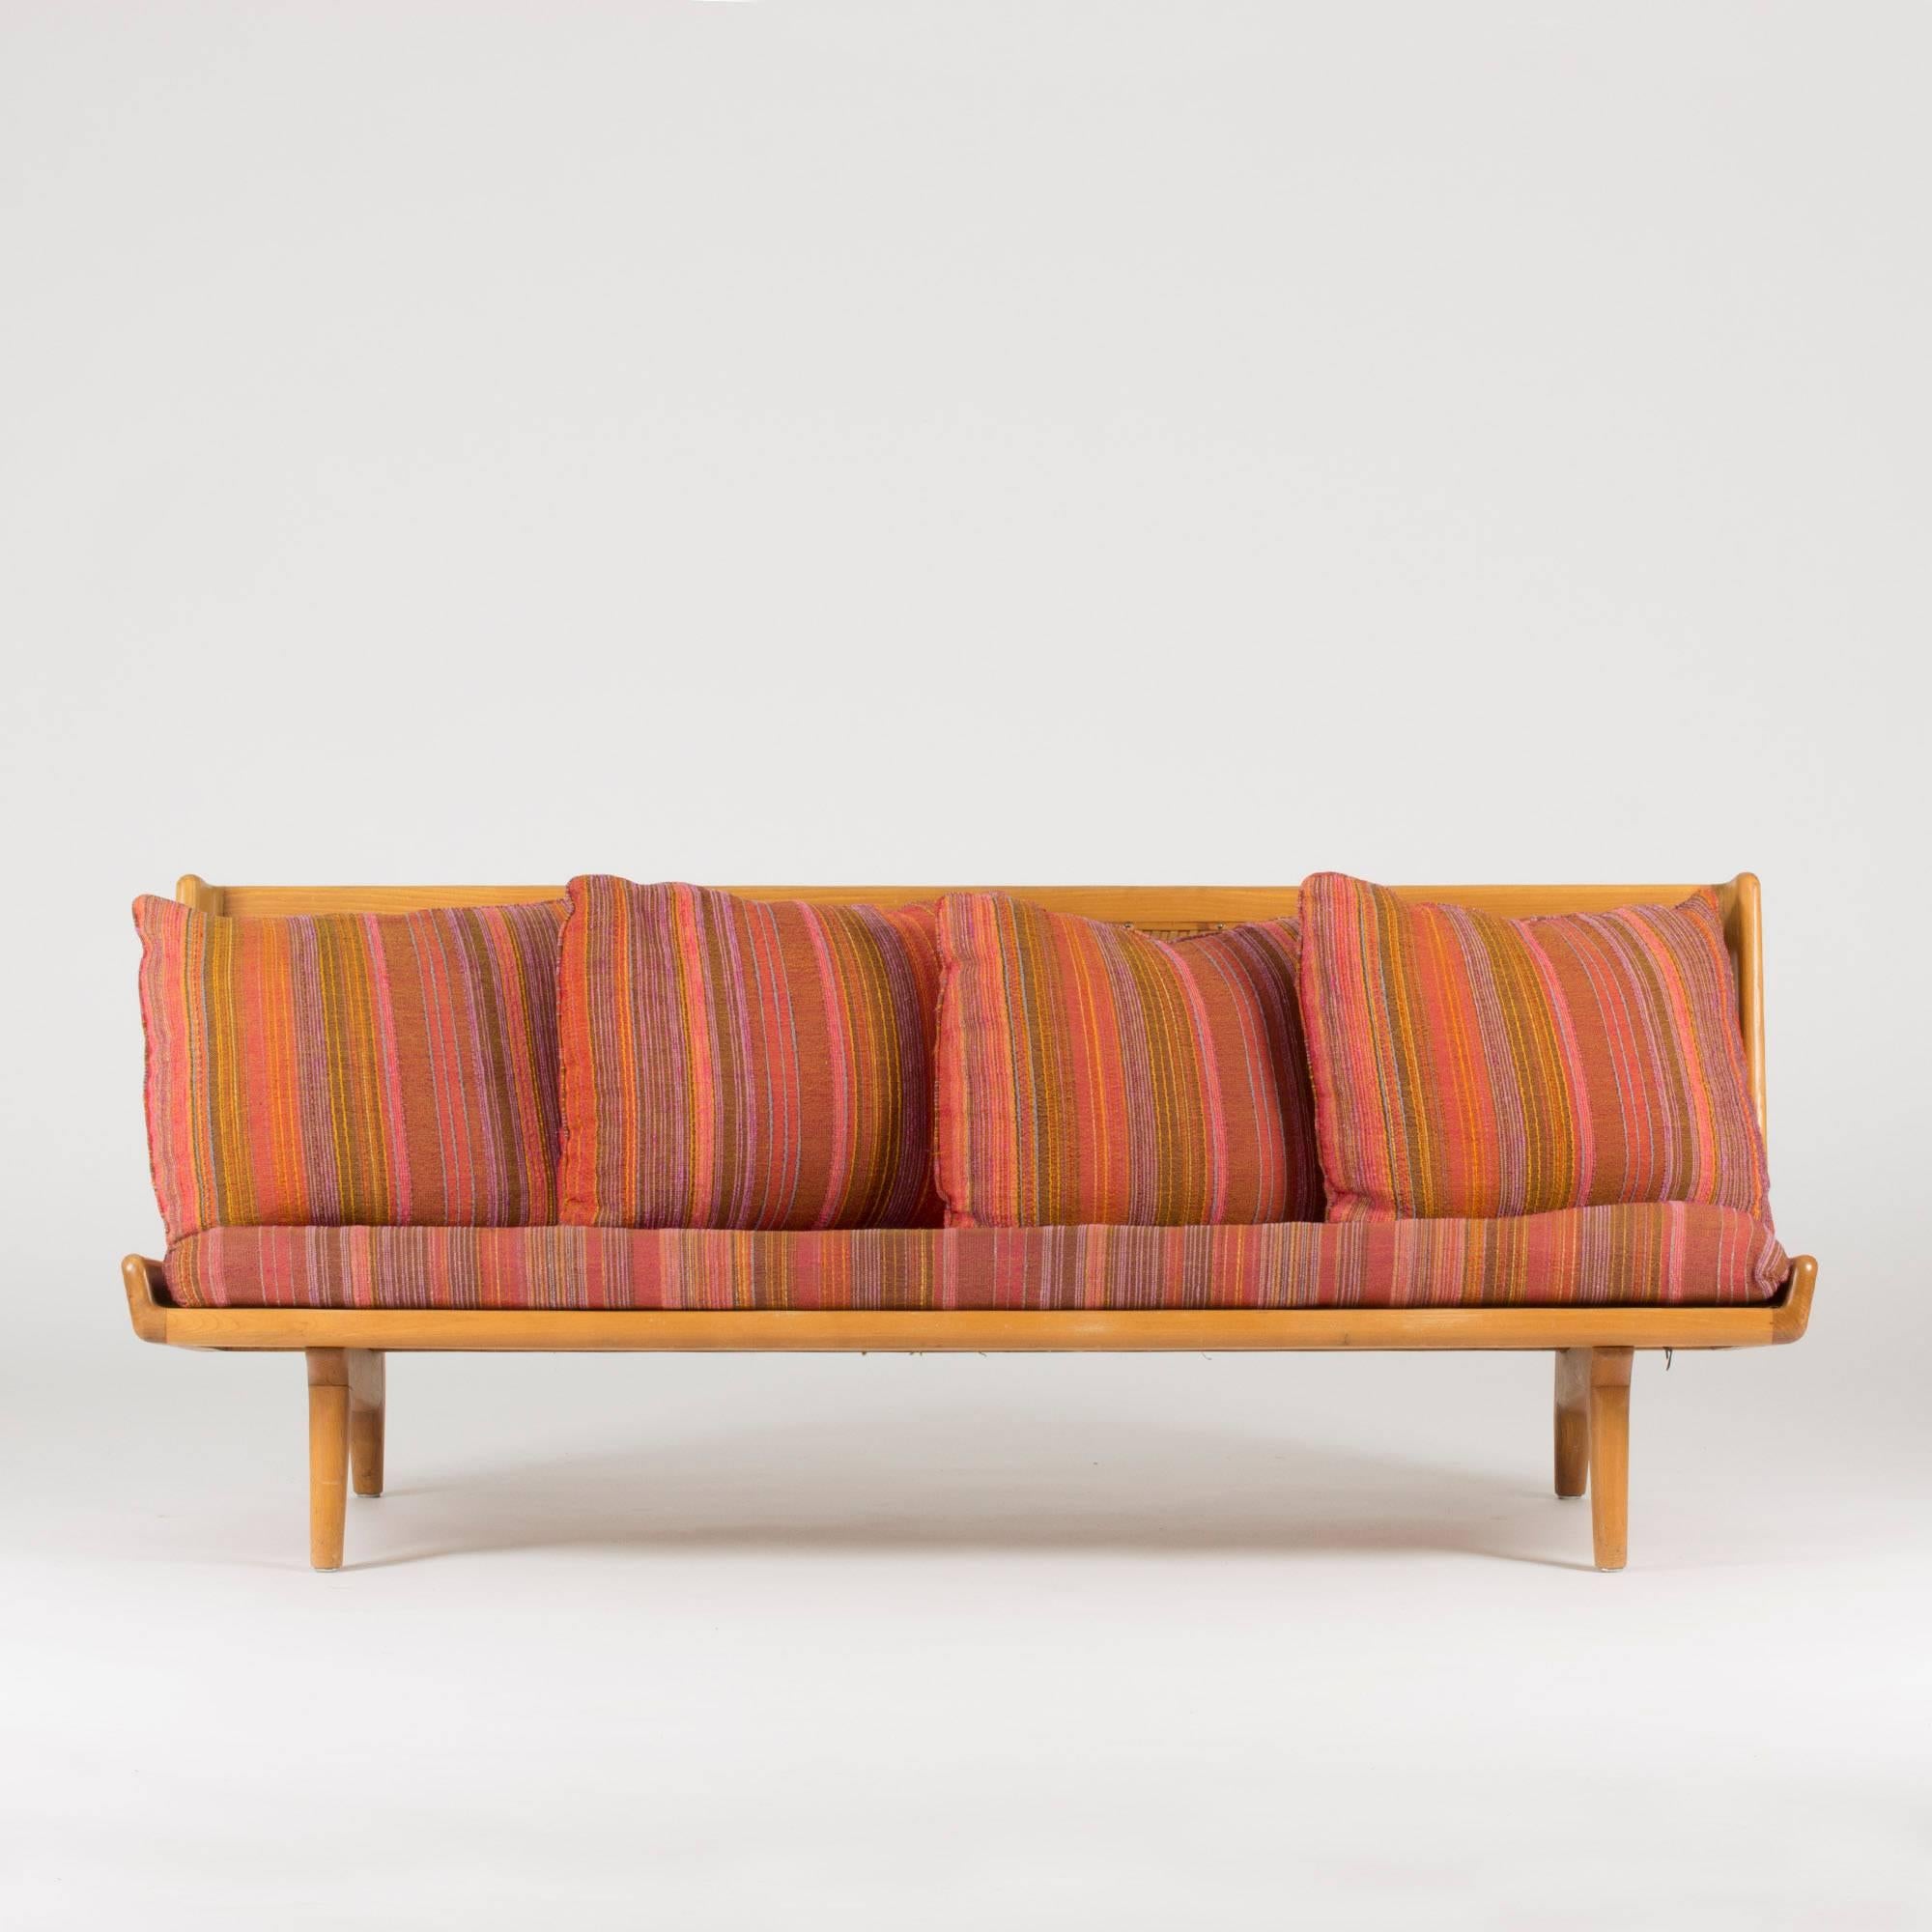 Sofa von Gustaf Hiort af Ornäs, hergestellt aus Buche mit skulpturalen Details. Die wunderbare Lederrückenlehne mit Gurtband macht dieses Sofa zu einem echten Schmuckstück im Raum. Kissen und Sitz mit schönem, originalem Wollstoff. Kleine